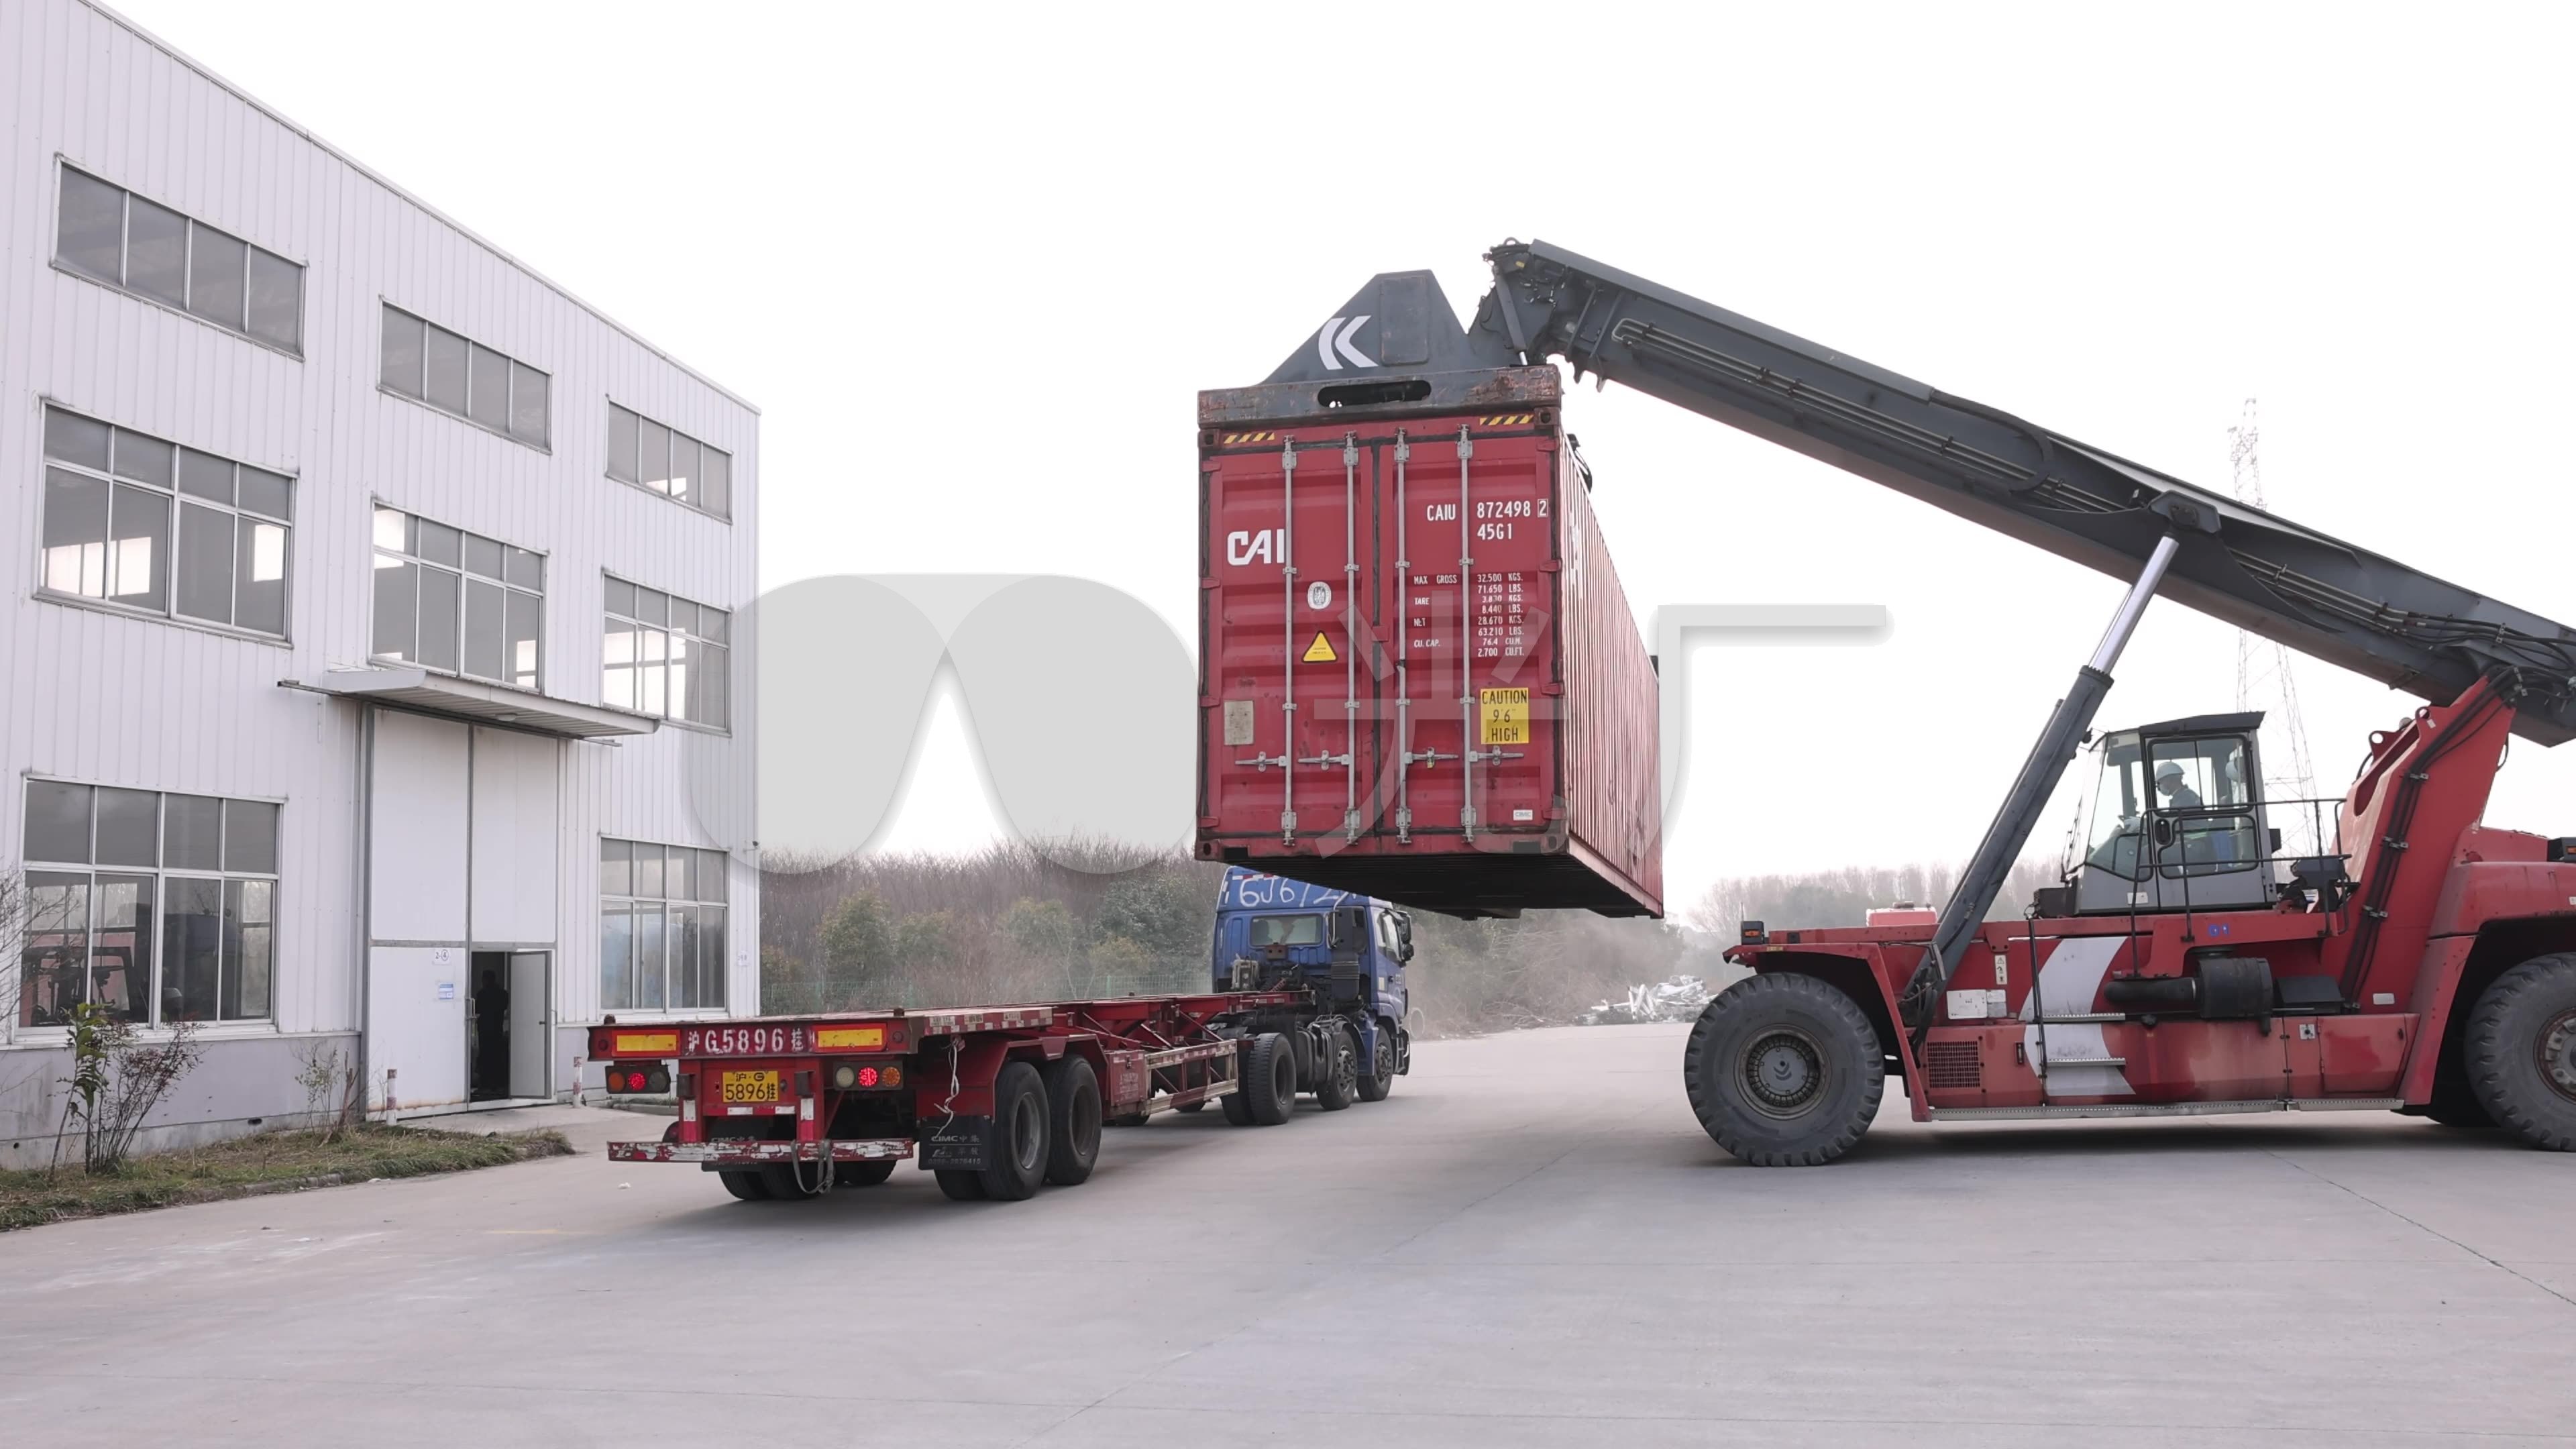 桁架式装车/卸车机器人 – 杭州联核科技有限公司